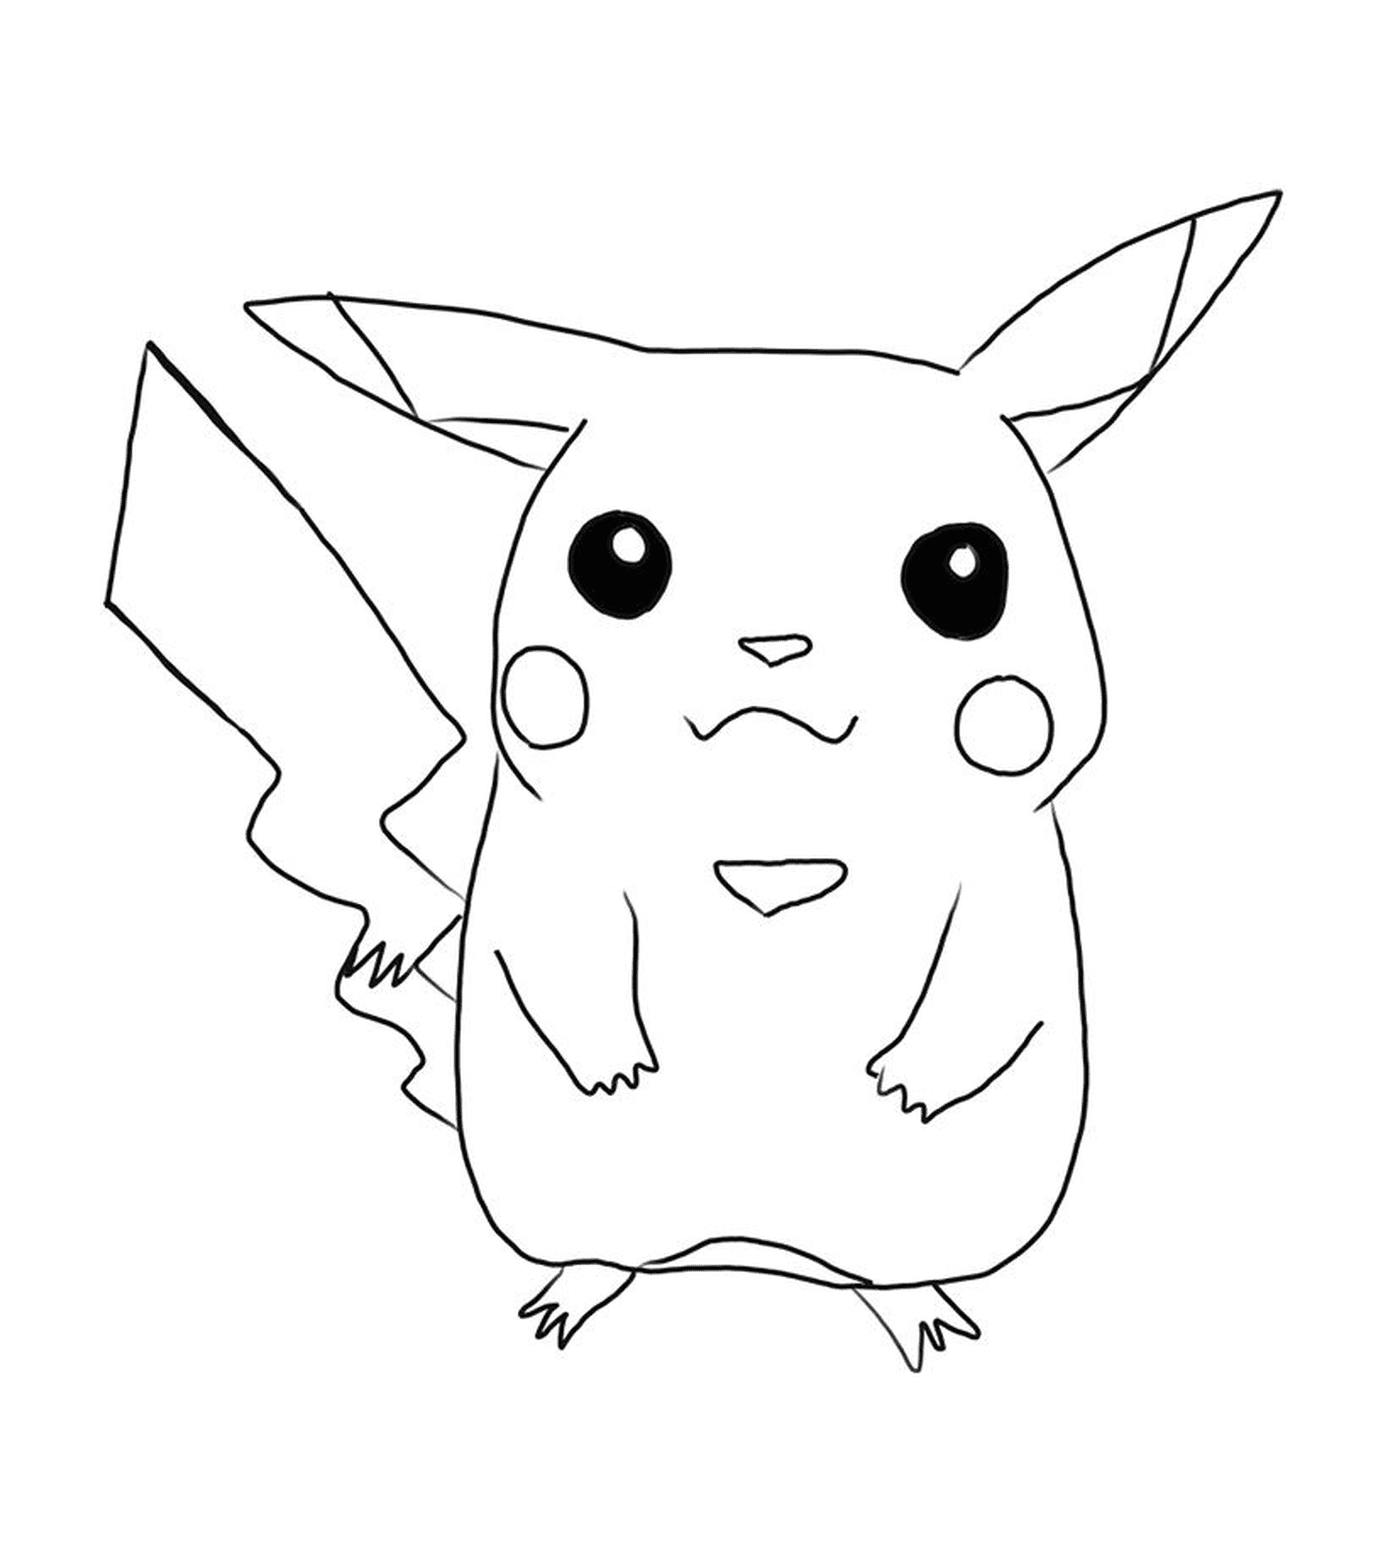  Pikachu, símbolo de la adoración 